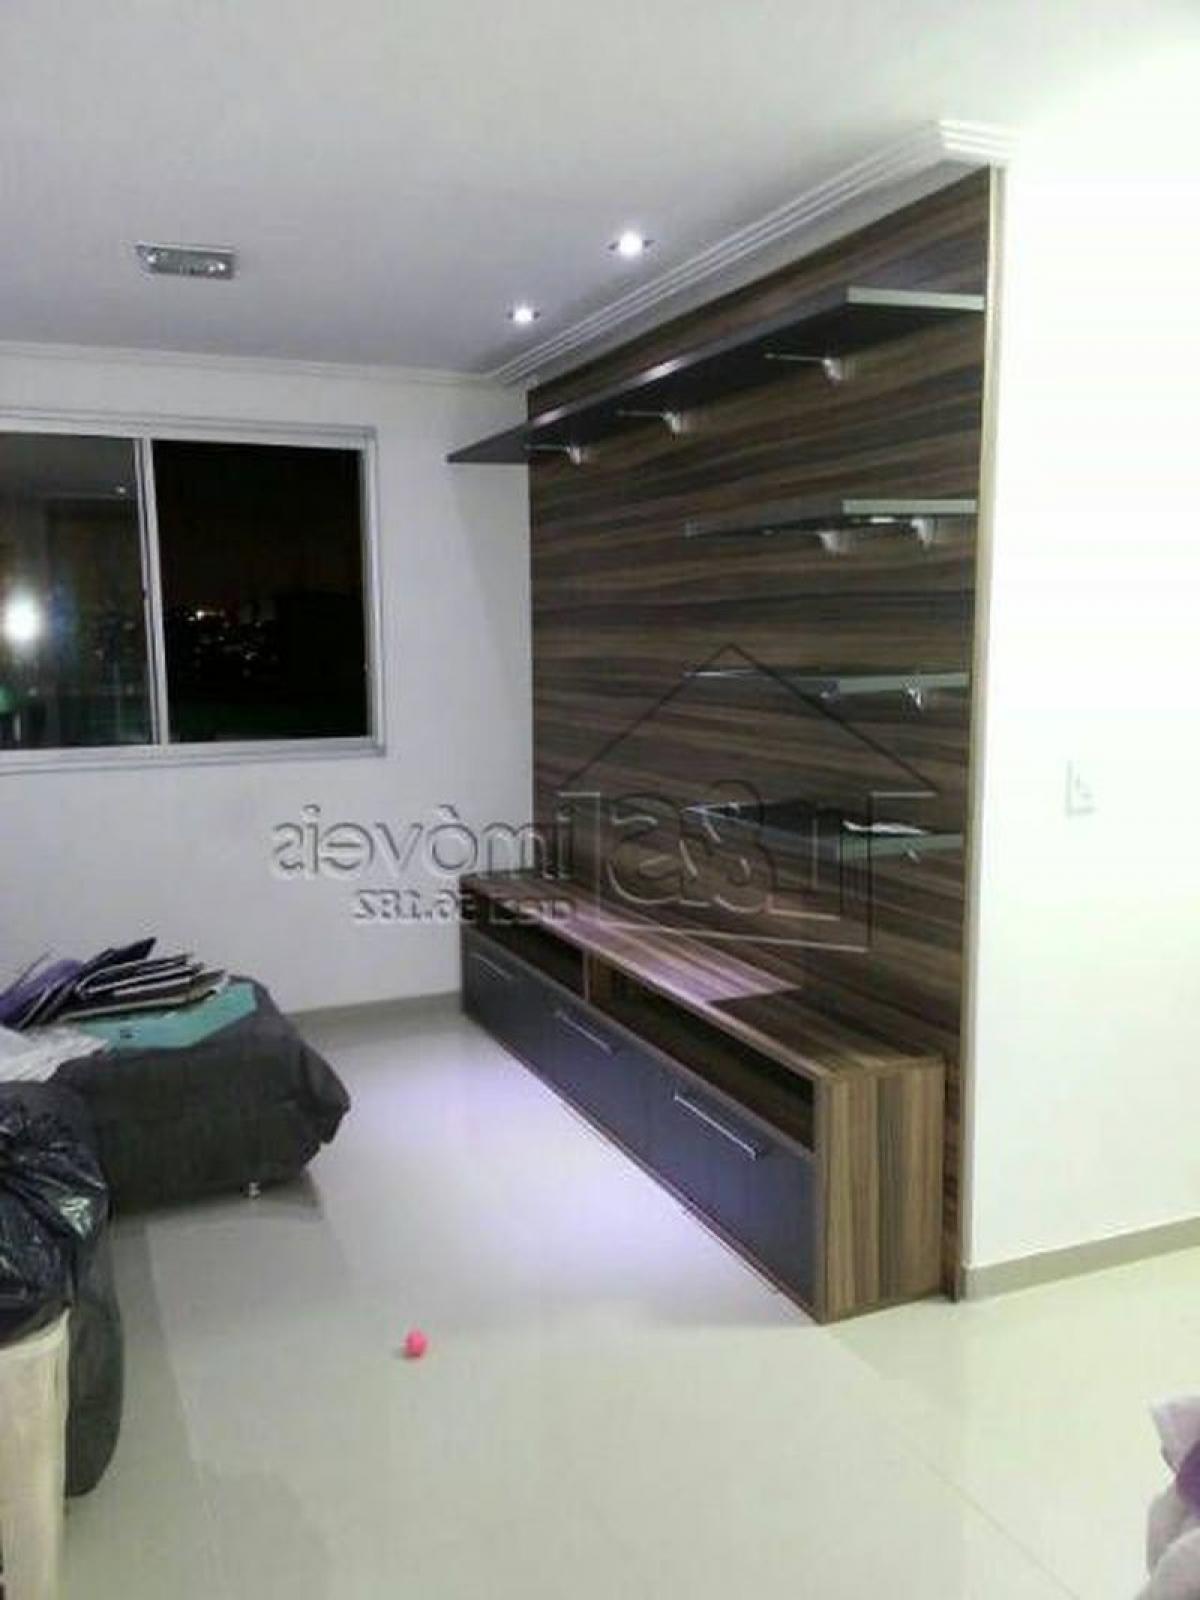 Picture of Apartment For Sale in Marilia, Sao Paulo, Brazil